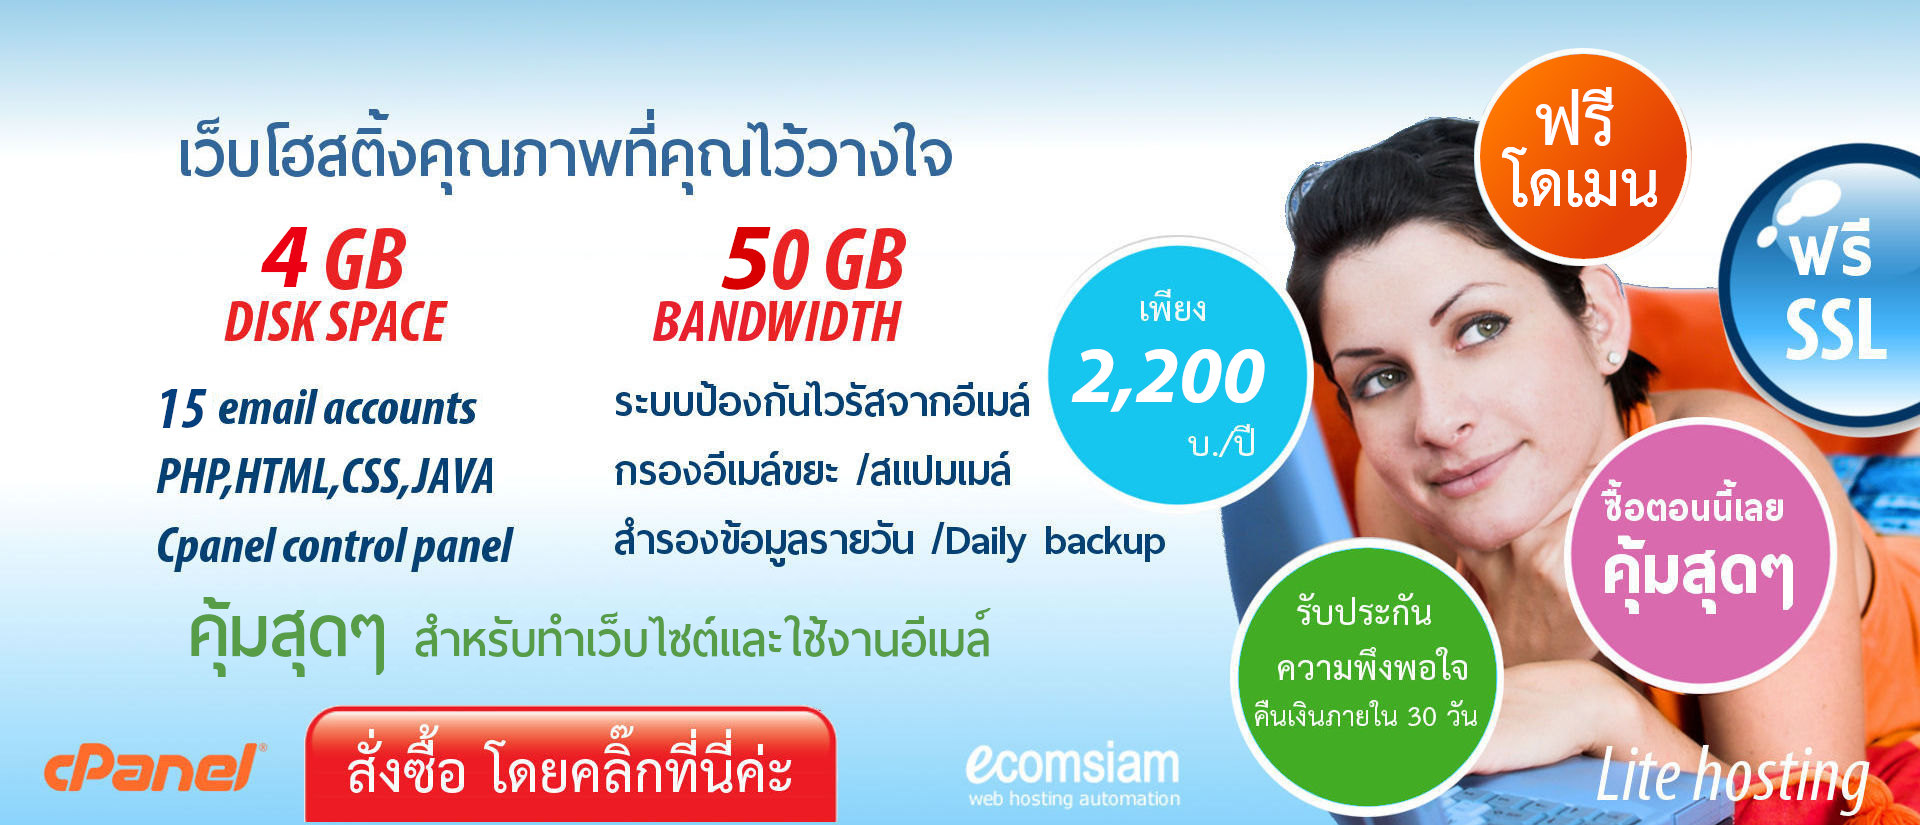 เว็บโฮสติ้ง ฟรีโดเมนเนม เริ่มต้นเพียง 2,200 บาท/ปี รับอีเมล์มากขึ้น/พื้นที่มากขึ้น และ ฟรีโดเมน - web hosting thailand free domain-liteplan-เว็บโฮสติ้งไทย ฟรี โดเมน ฟรี SSL email และเว็บไซต์สำหรับองค์กร บริการลูกค้า ดูแลดี 